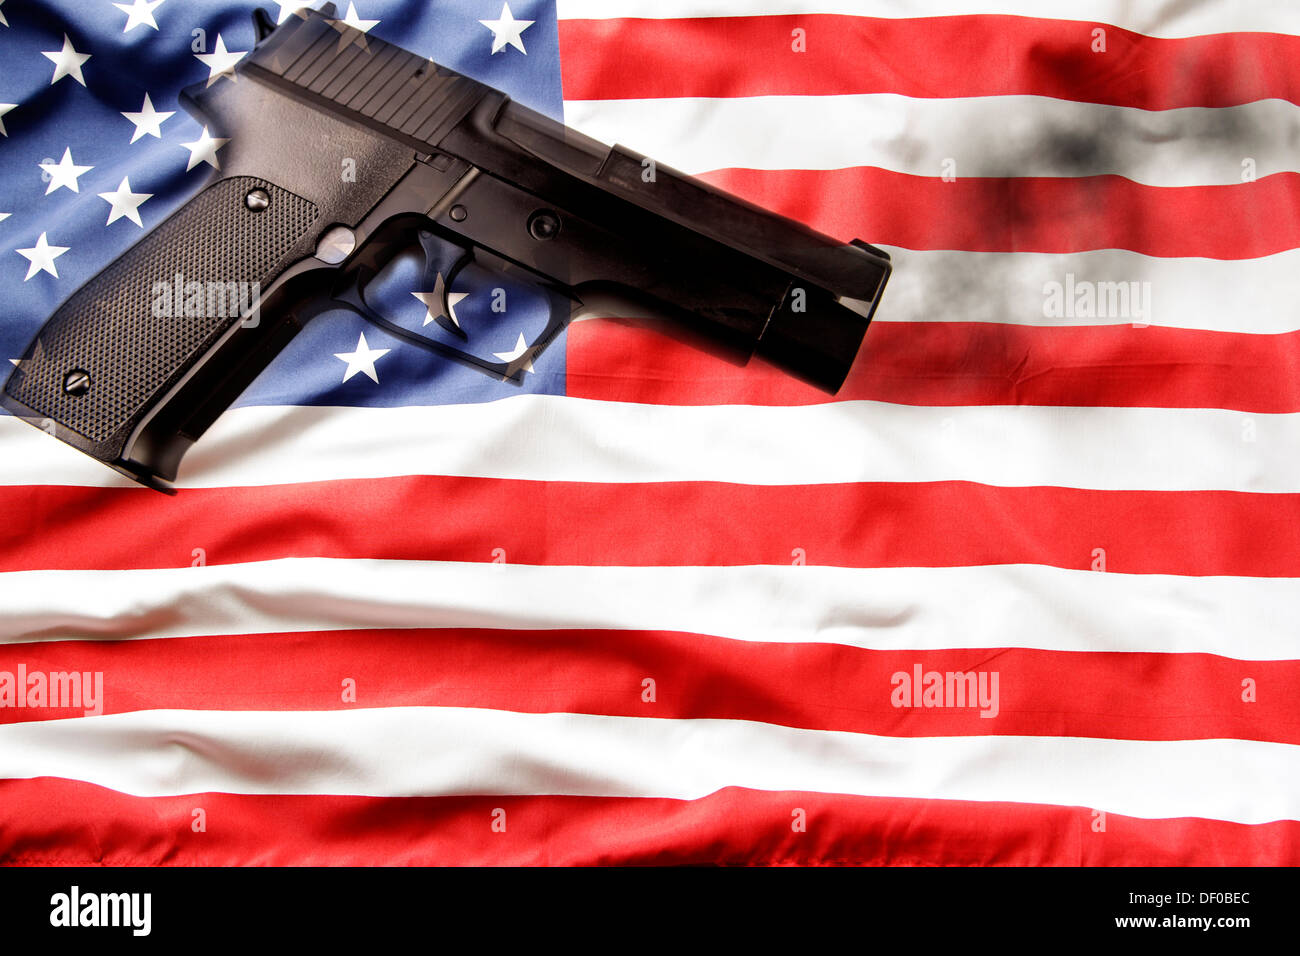 Handgun and American flag. Gun control concept. Stock Photo